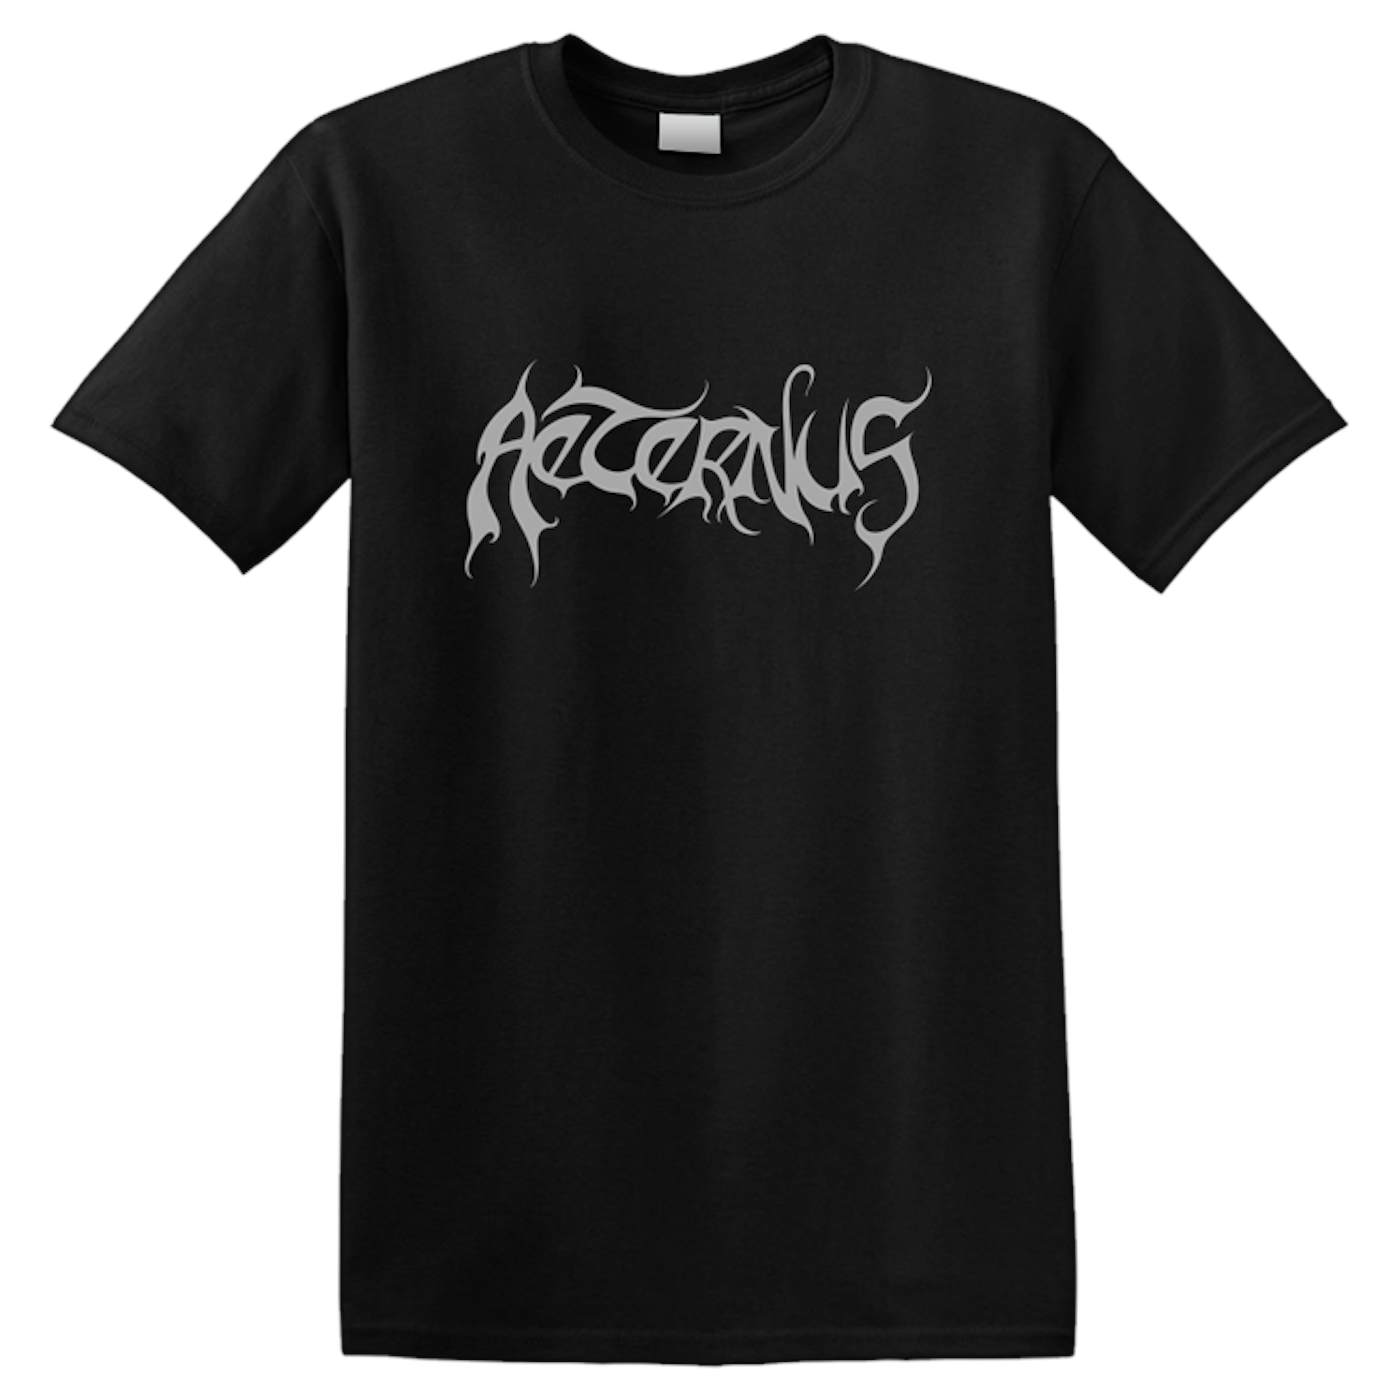 AETERNUS - 'Heathen' T-Shirt